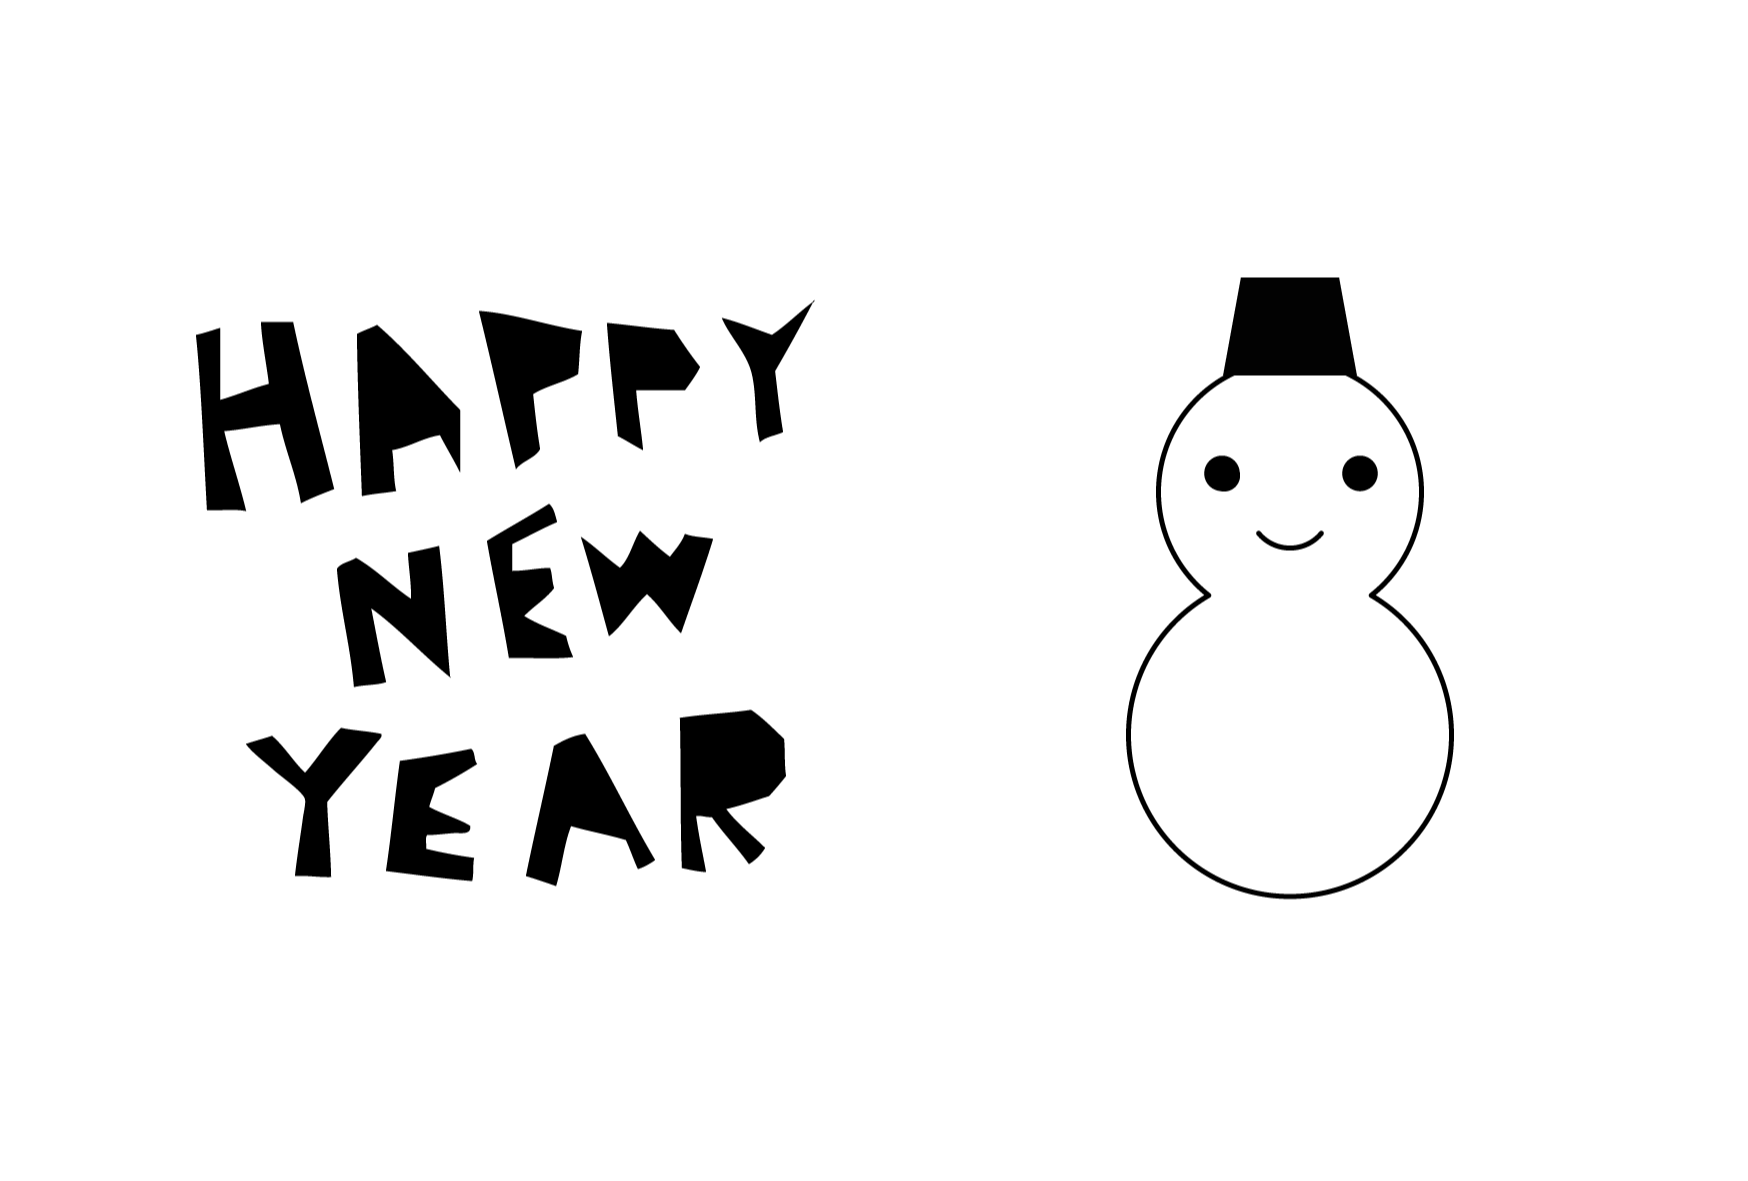 年賀状 白黒テンプレート 雪だるま 無料 かわいいフリー素材 イラストk